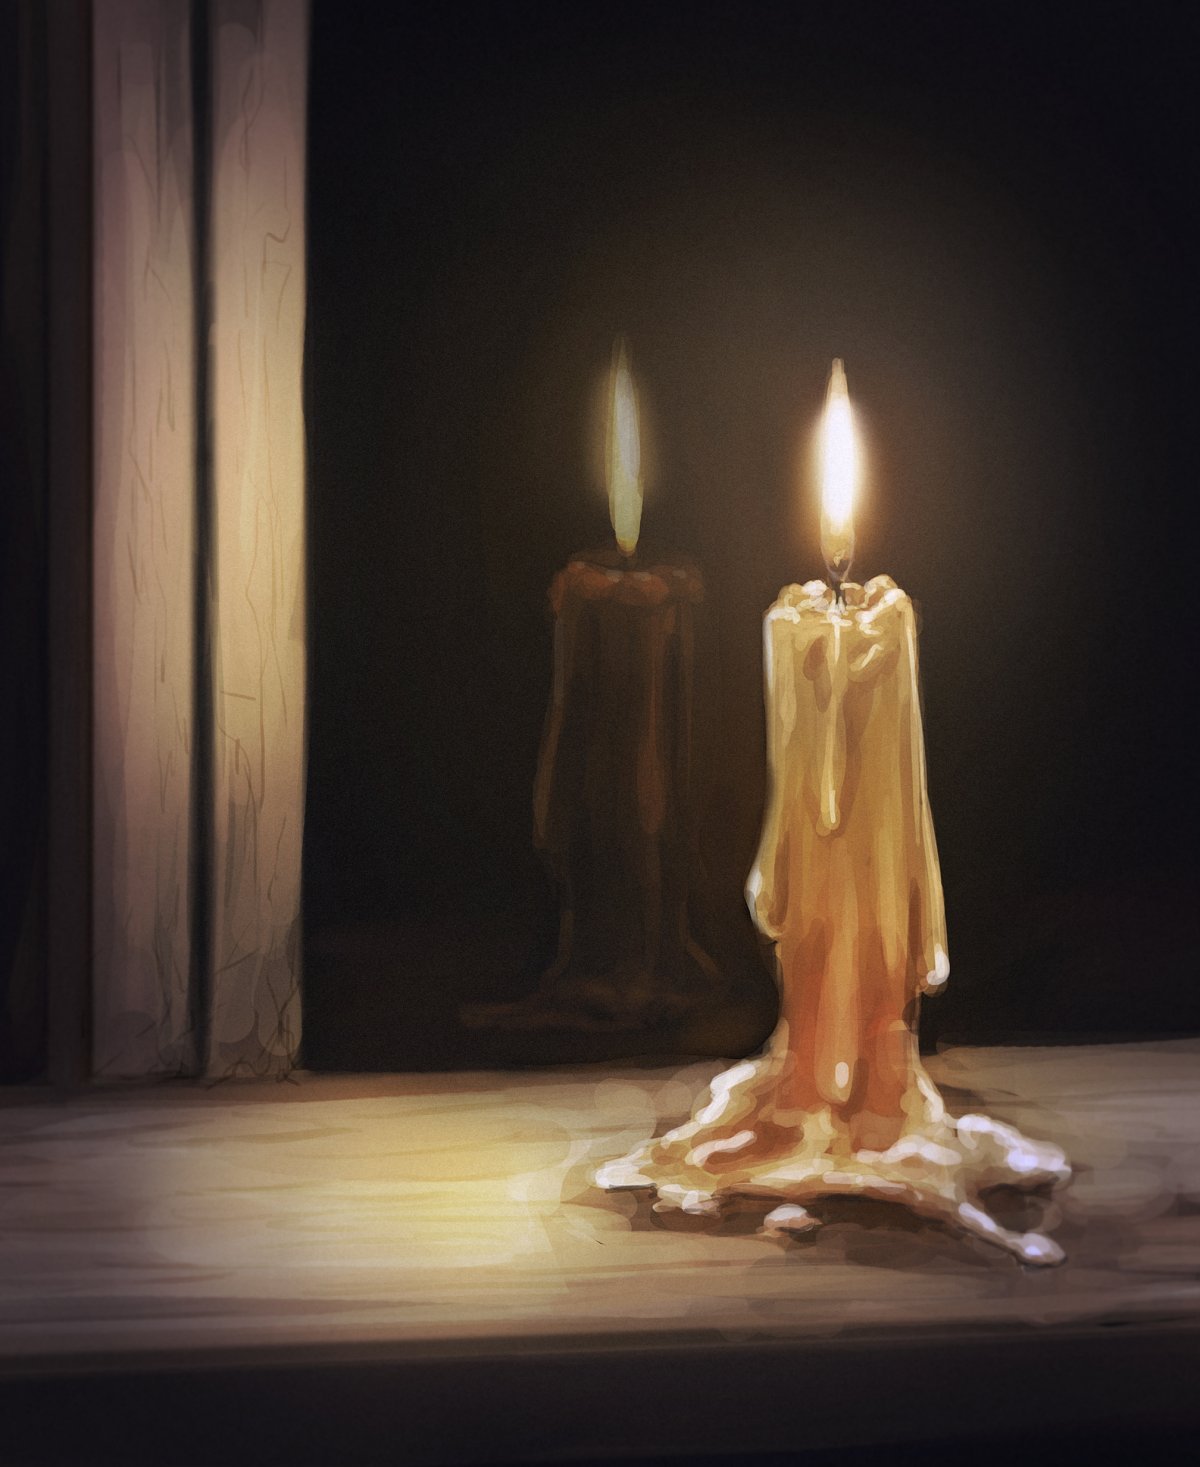 на столе догорает свеча